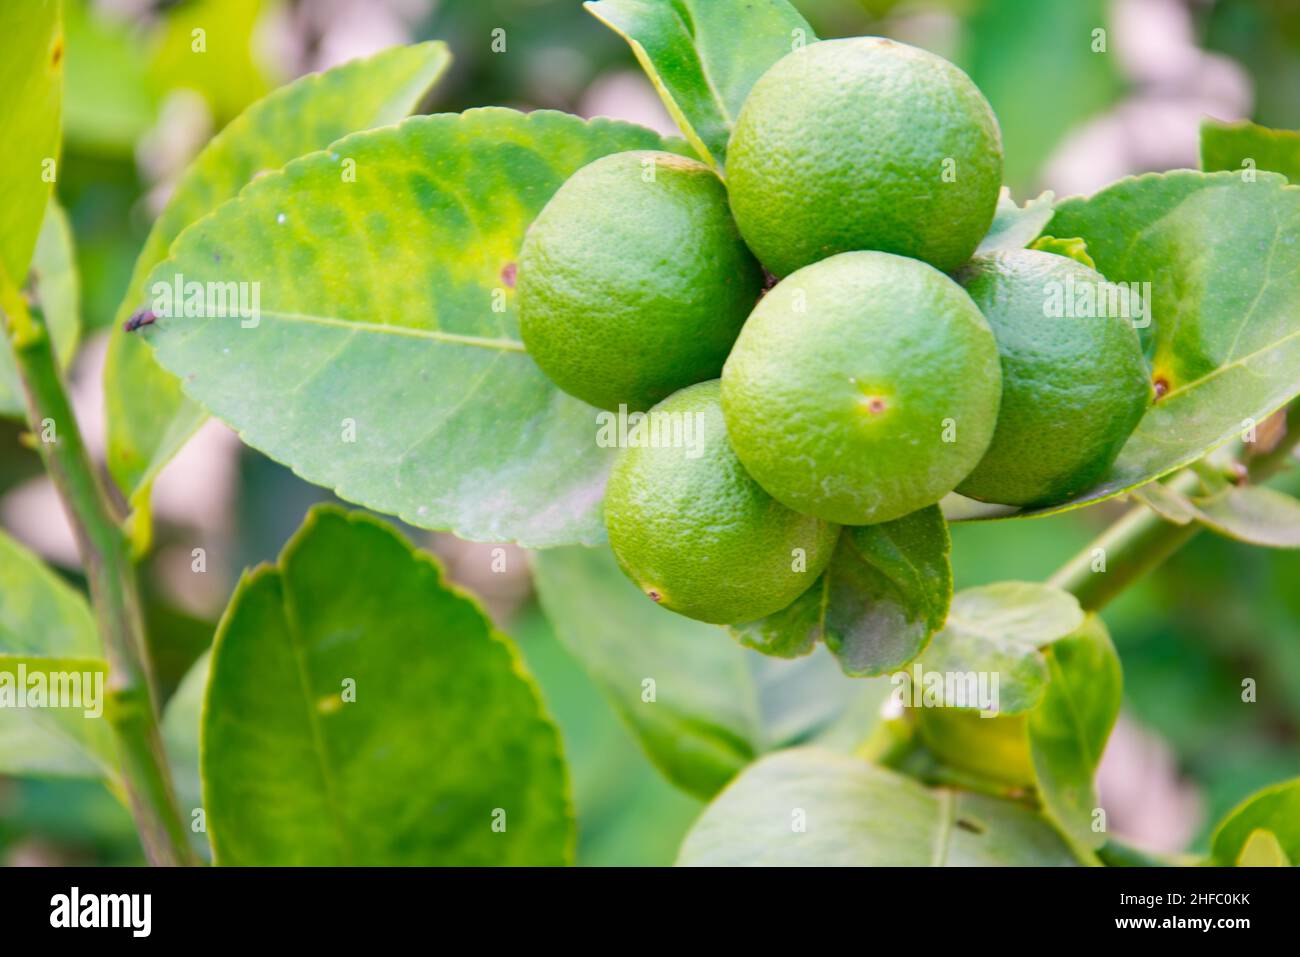 Grüne Limetten auf der Linde (Citrus aurantifolia), sie sind eng mit der Zitrone verwandt. Es hat einen sauren Geschmack und ist eine ausgezeichnete Quelle von Vitamin C. Stockfoto